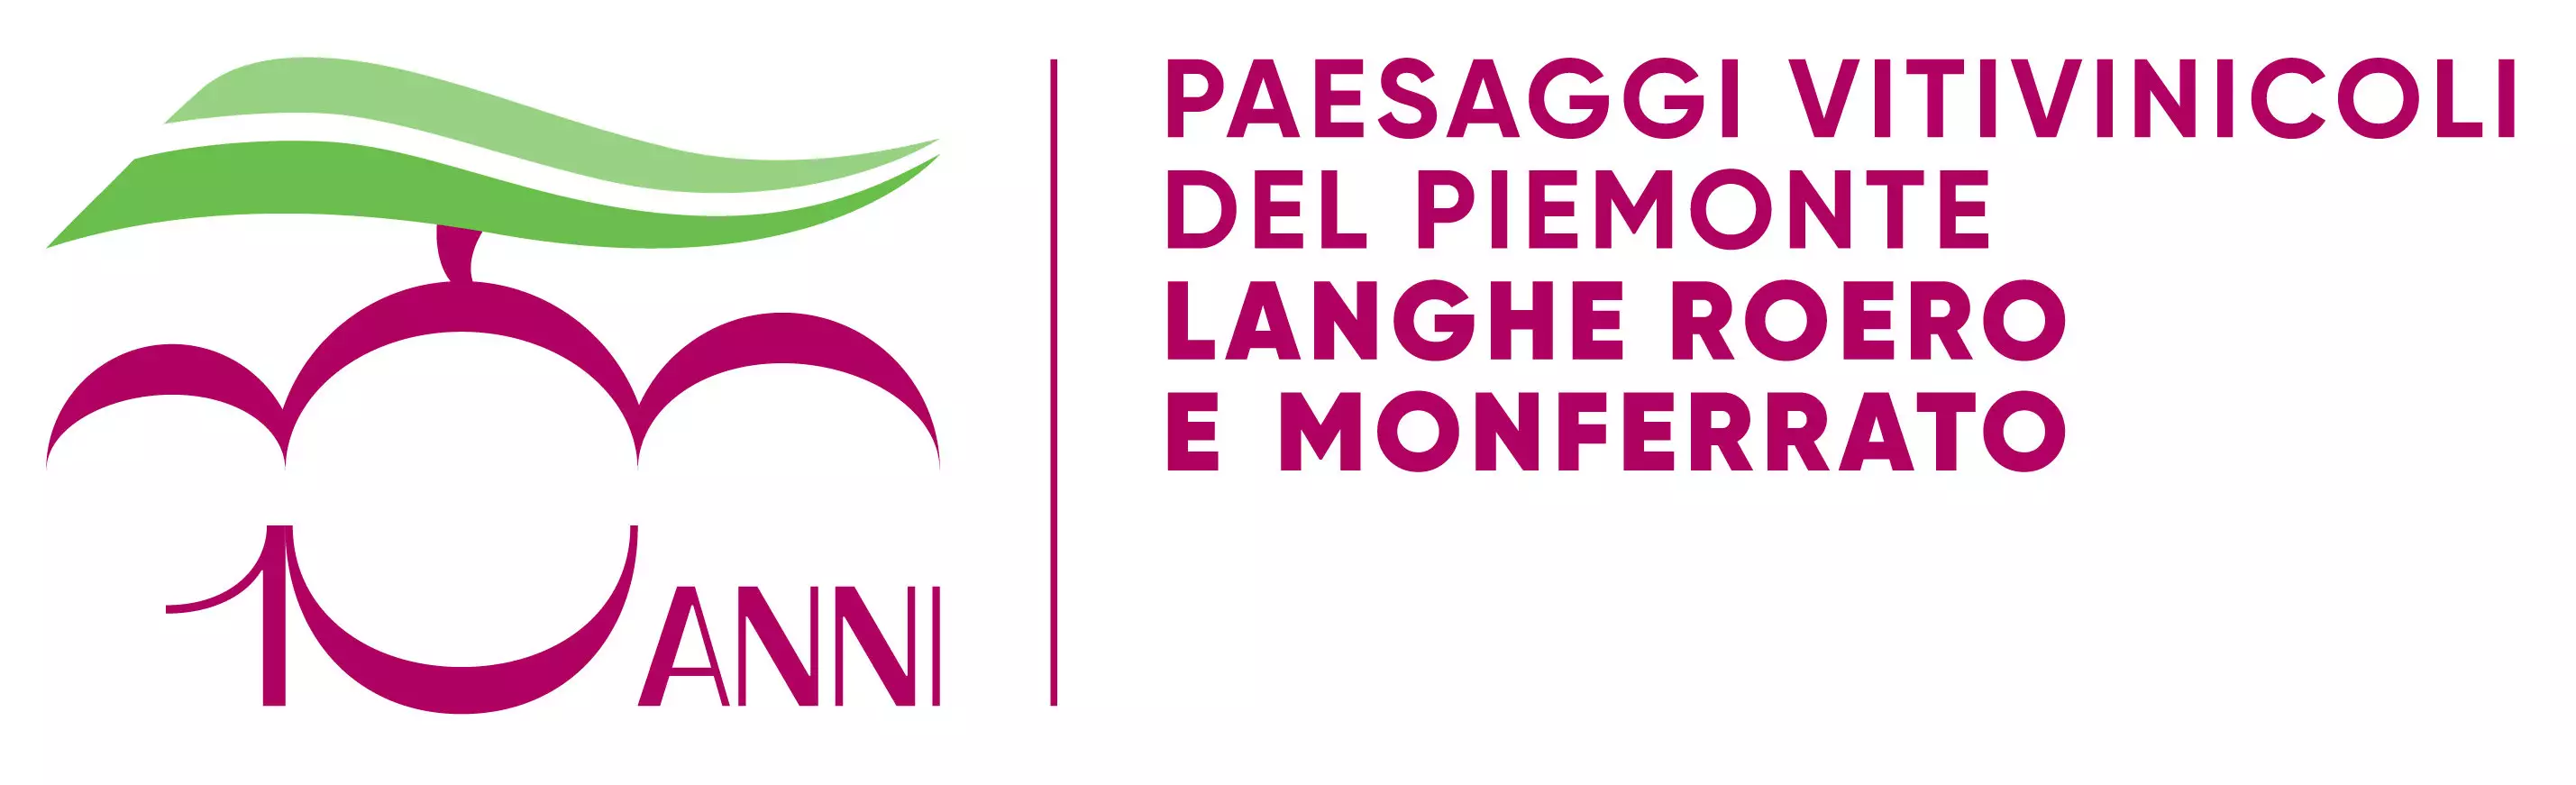 Associazione per il patrimonio dei Paesaggi vitivinicoli di Langhe-Roero e Monferrato